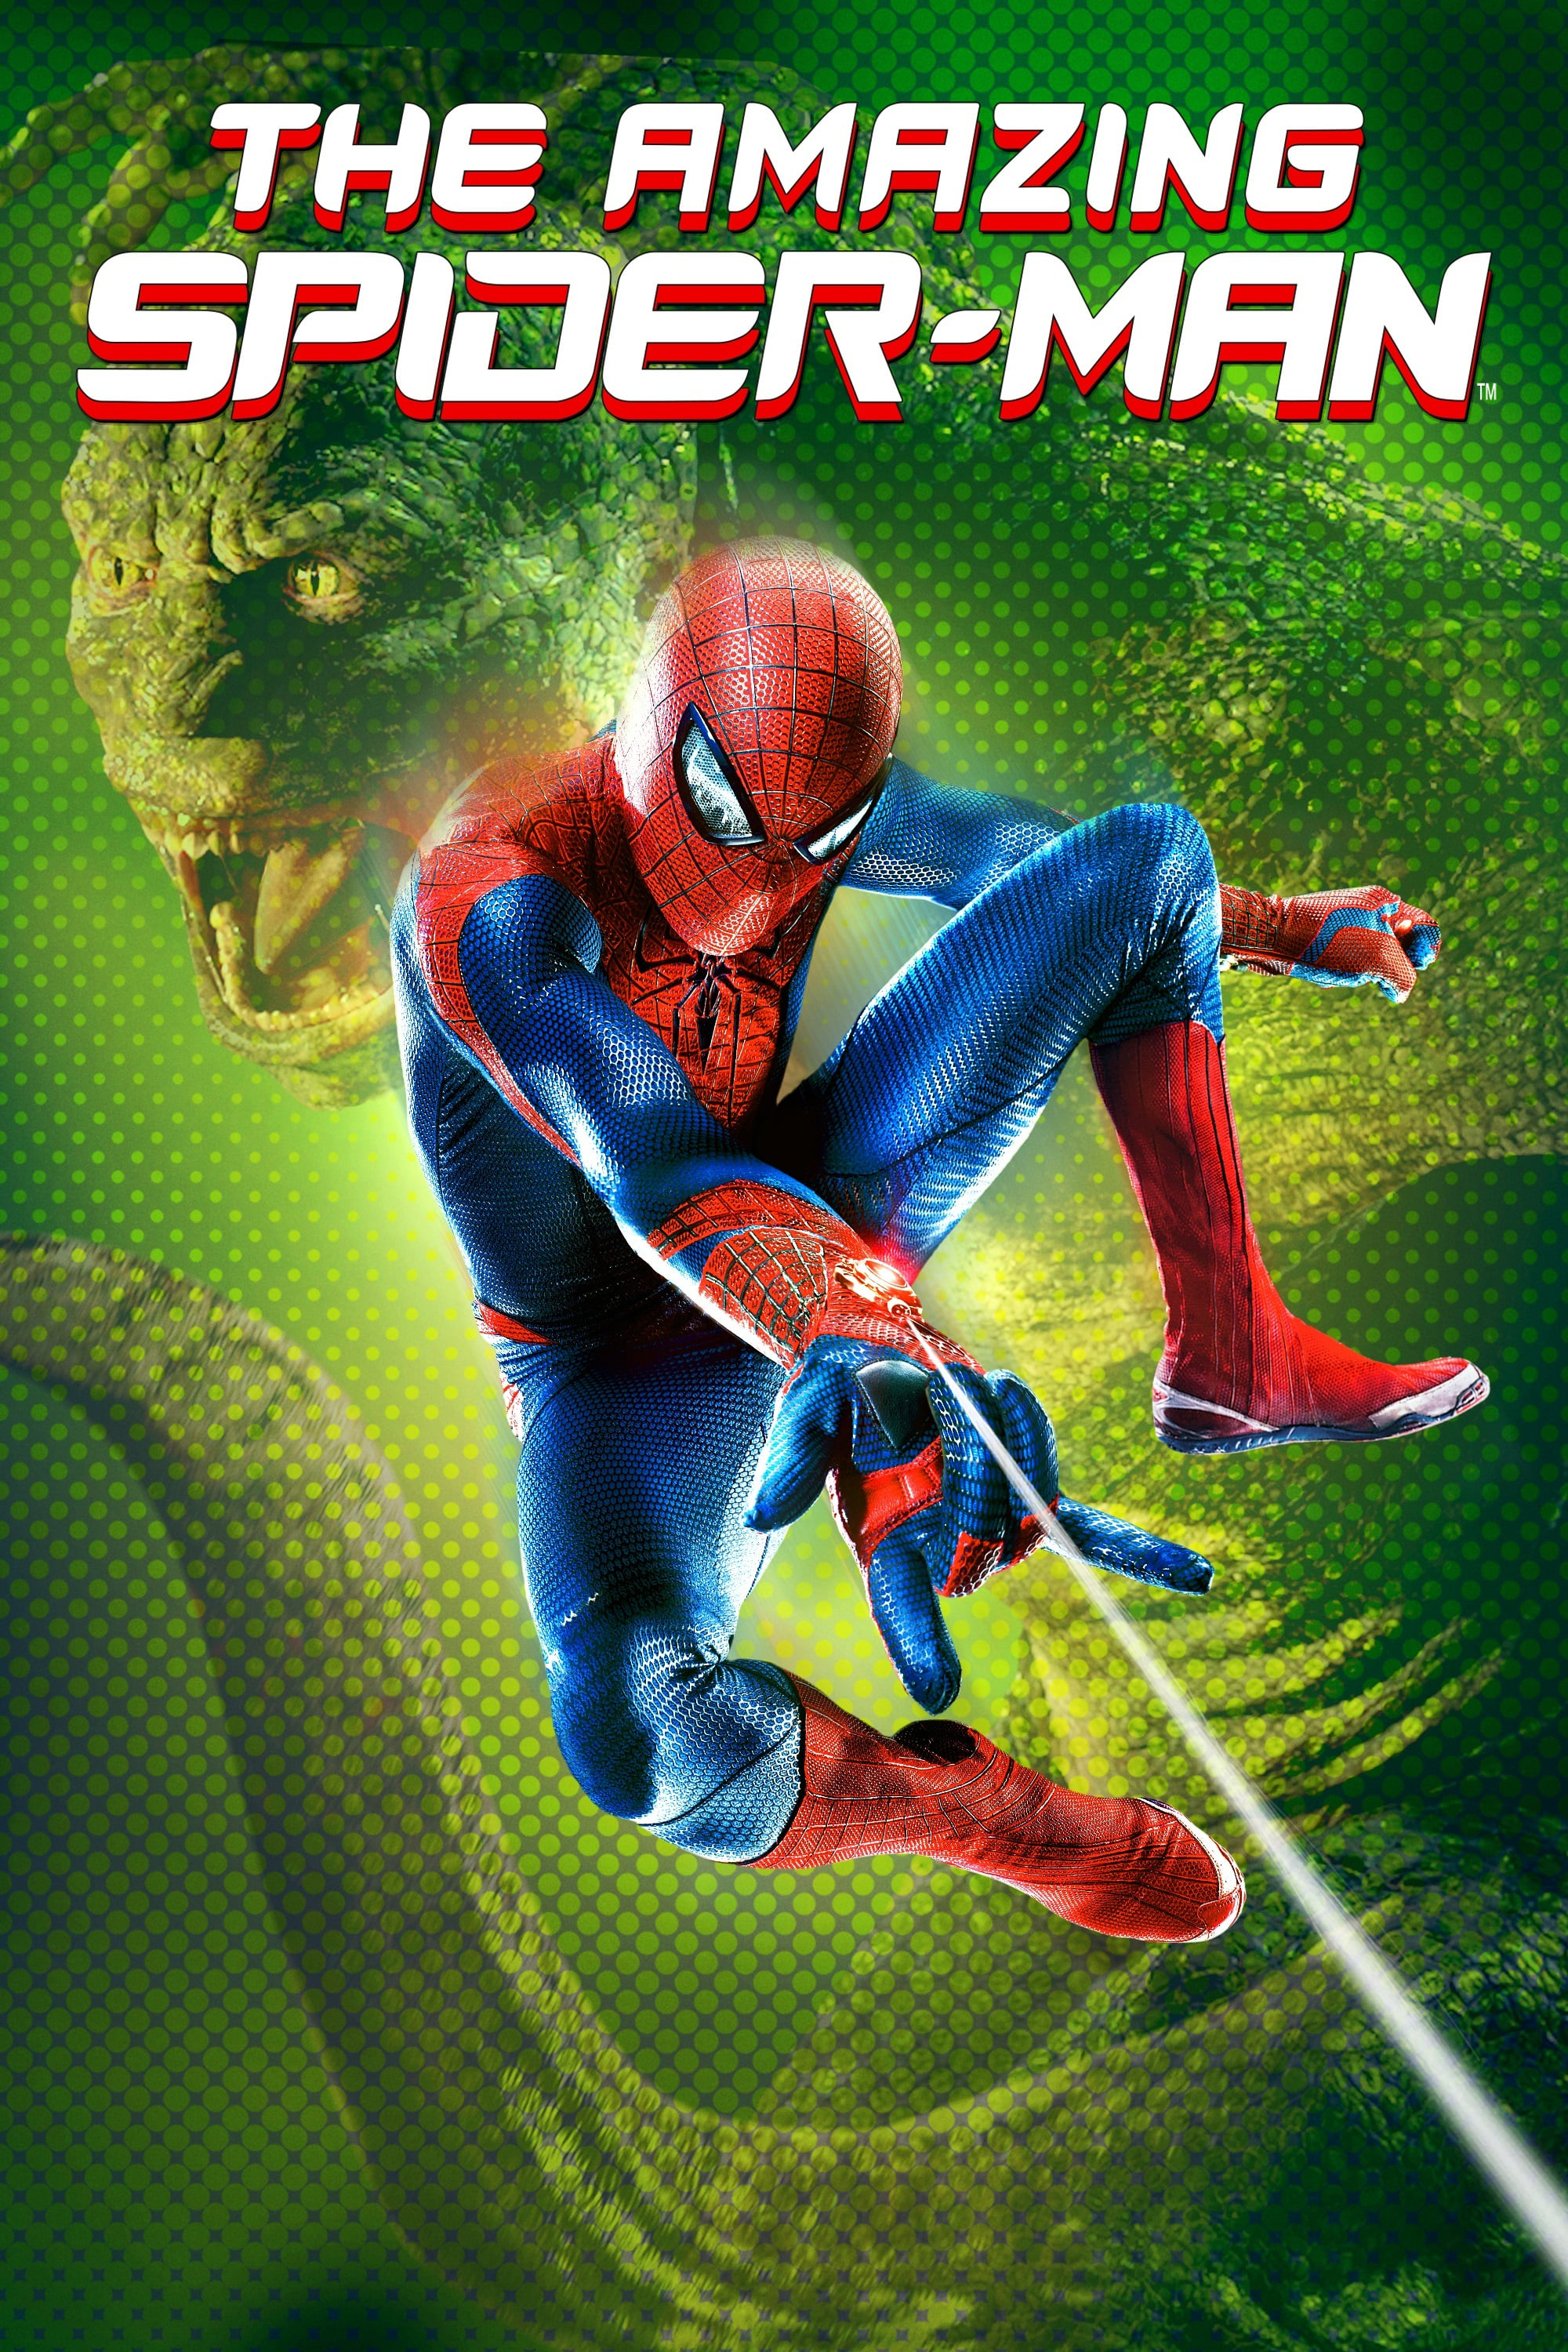 The Amazing Spider-Man Stream Kkiste